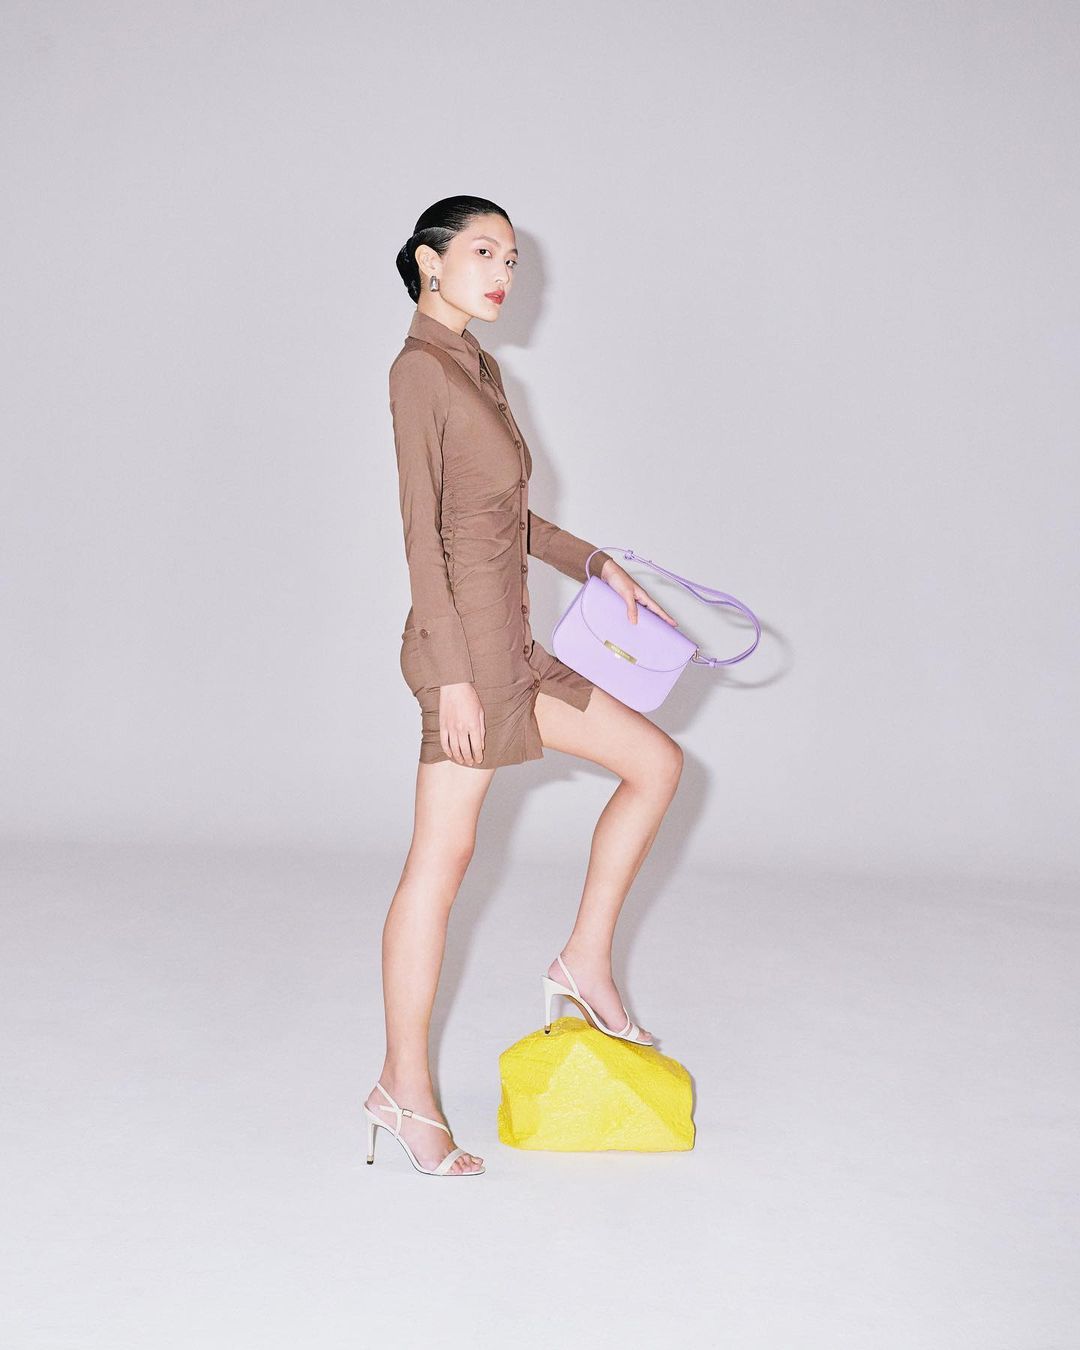 kelly lim singapore basic models malaysia talent fashion female